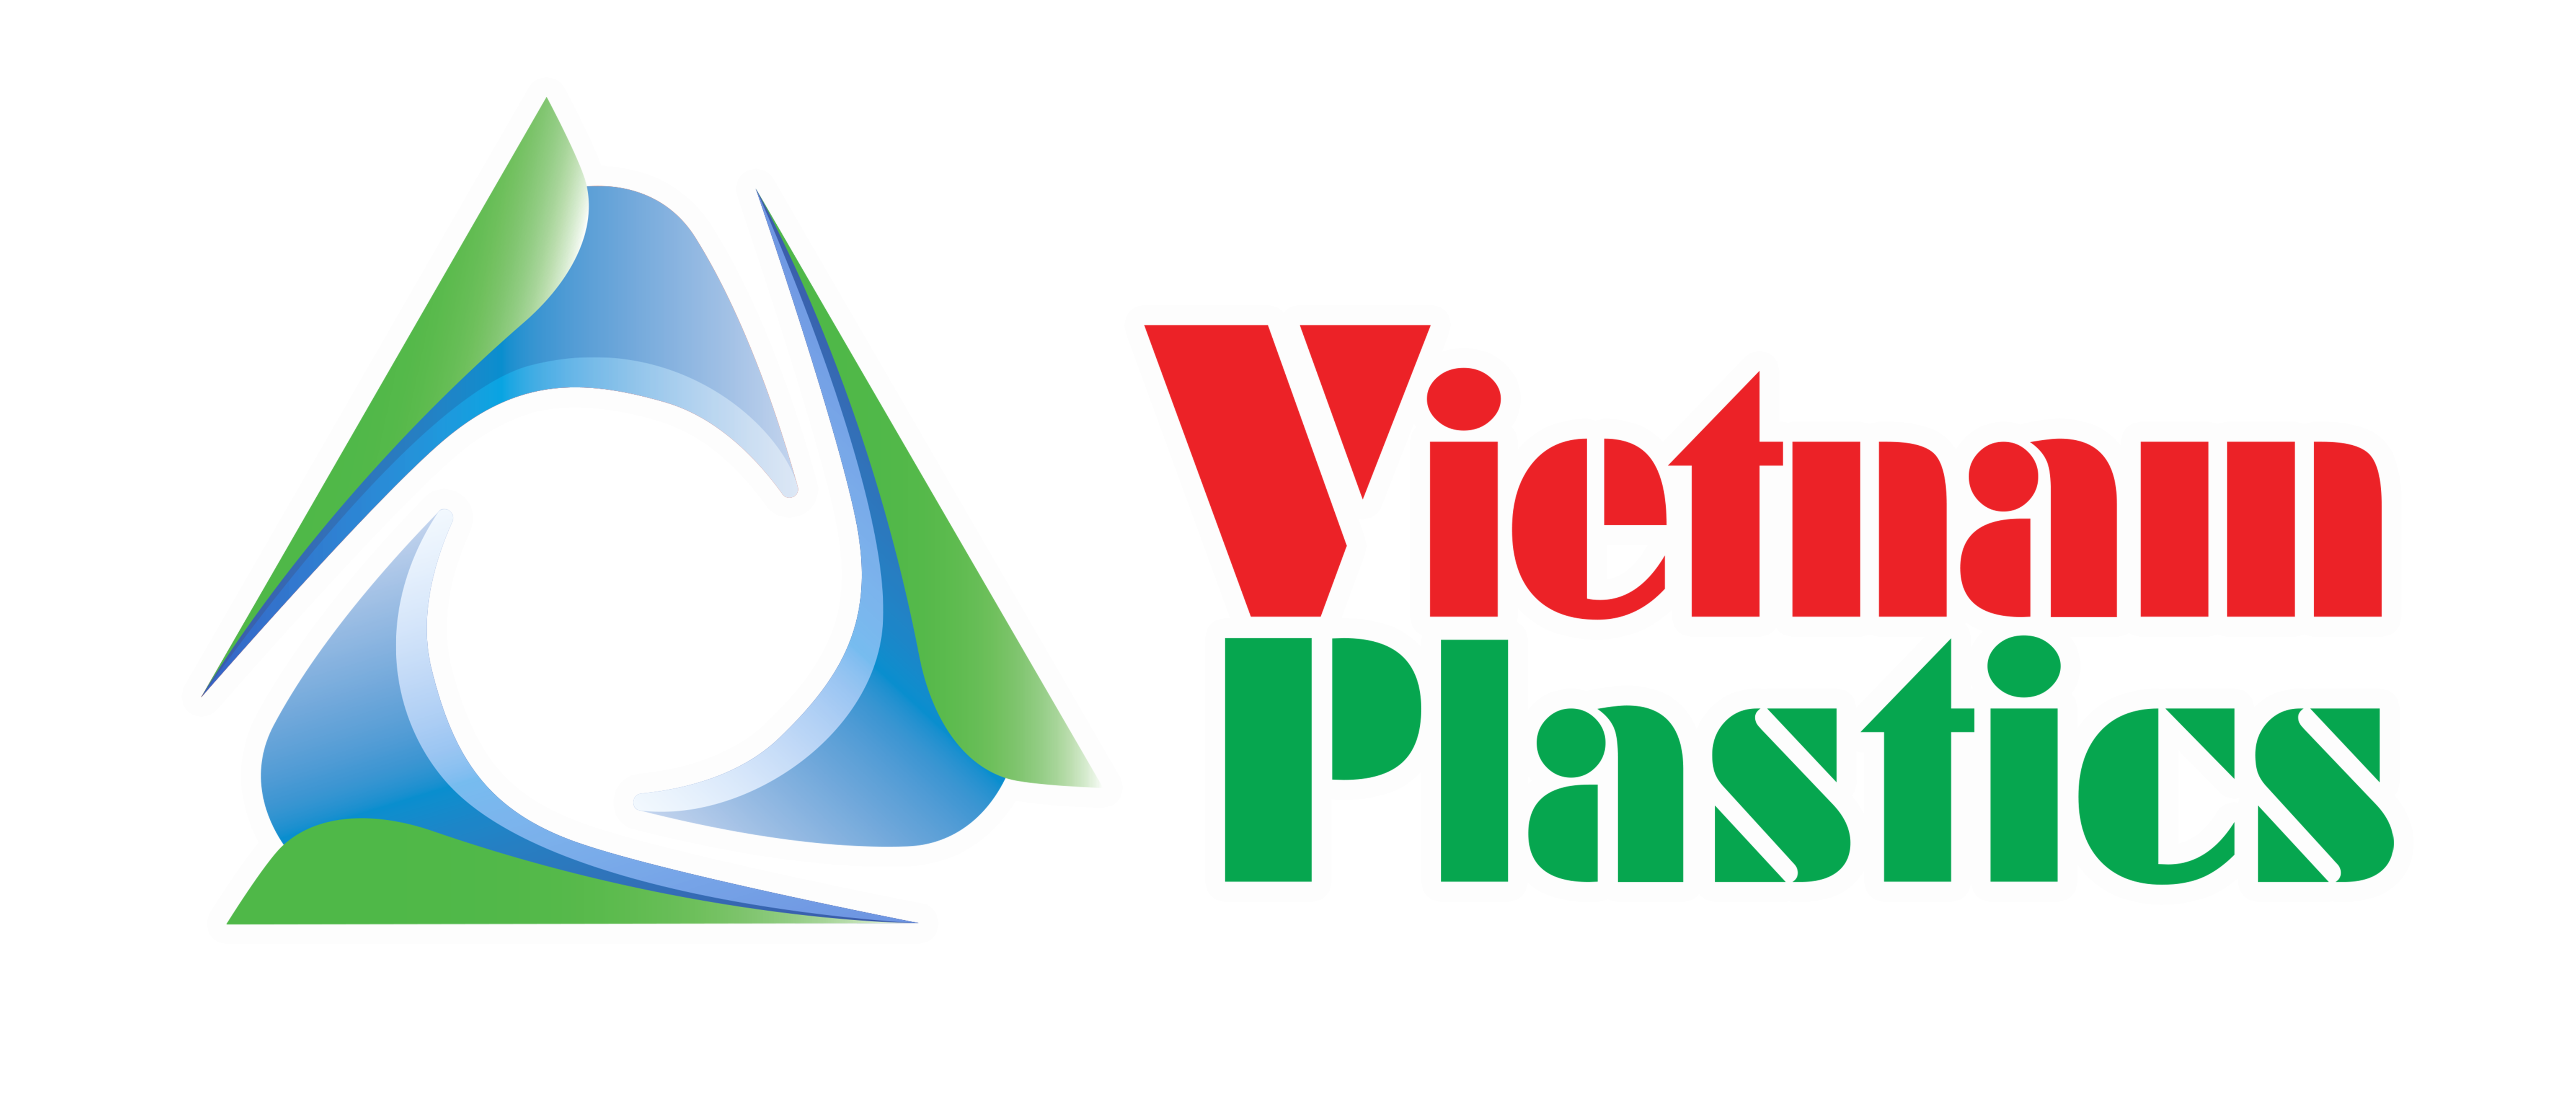 Vietnamplastics.vn - Always listening - Always share